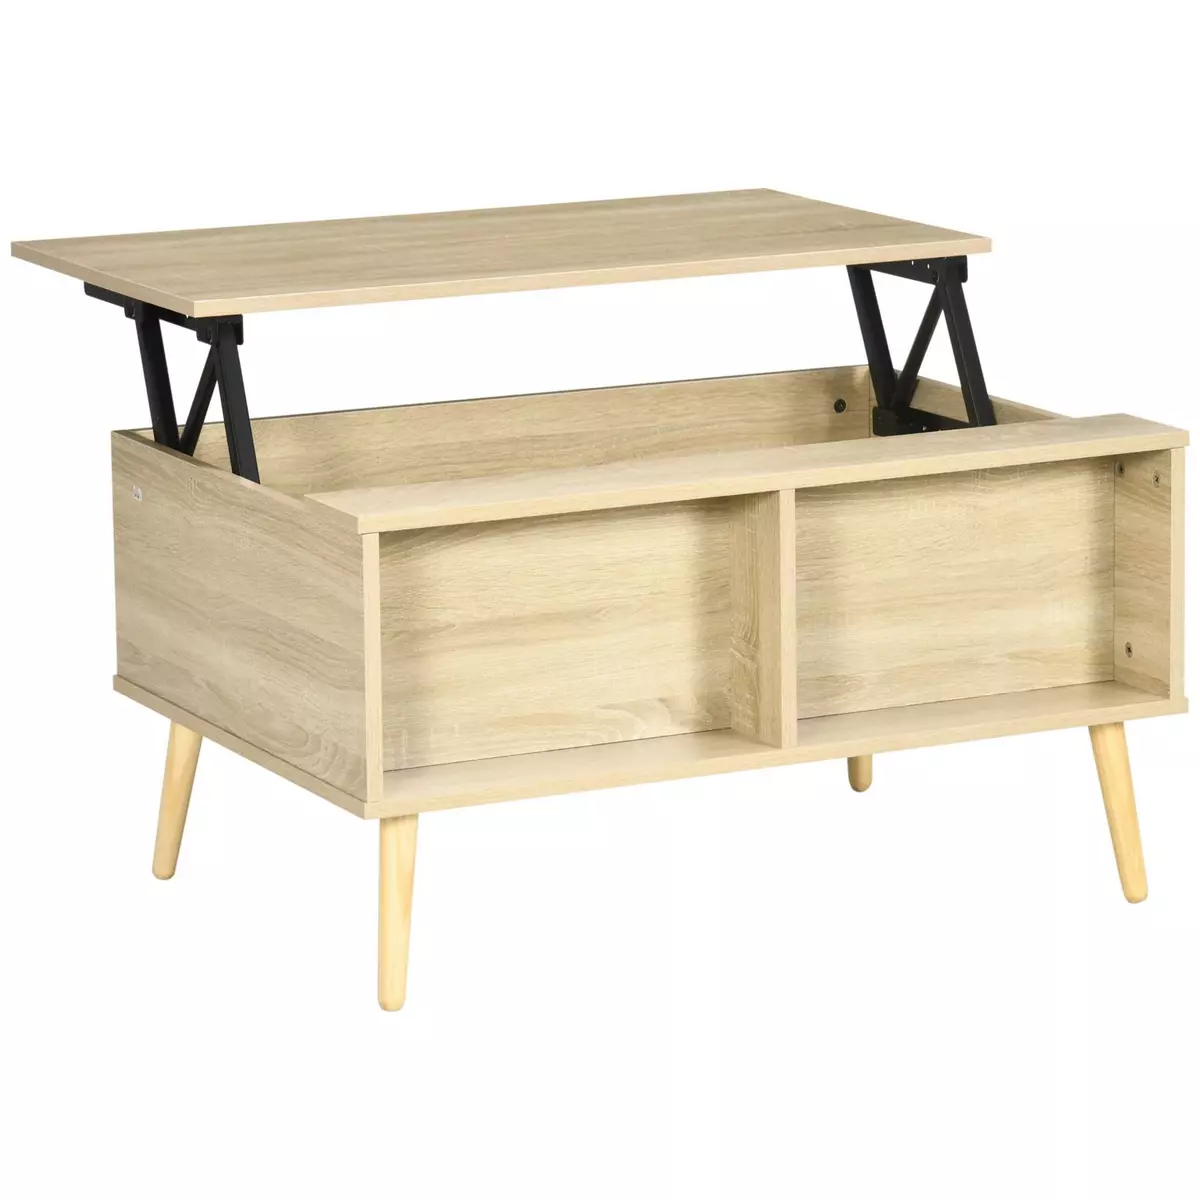 HOMCOM Table basse relevable - 2 niches, coffre de rangement - dim. 85L x 60l x 59,5H cm - aspect bois chêne clair